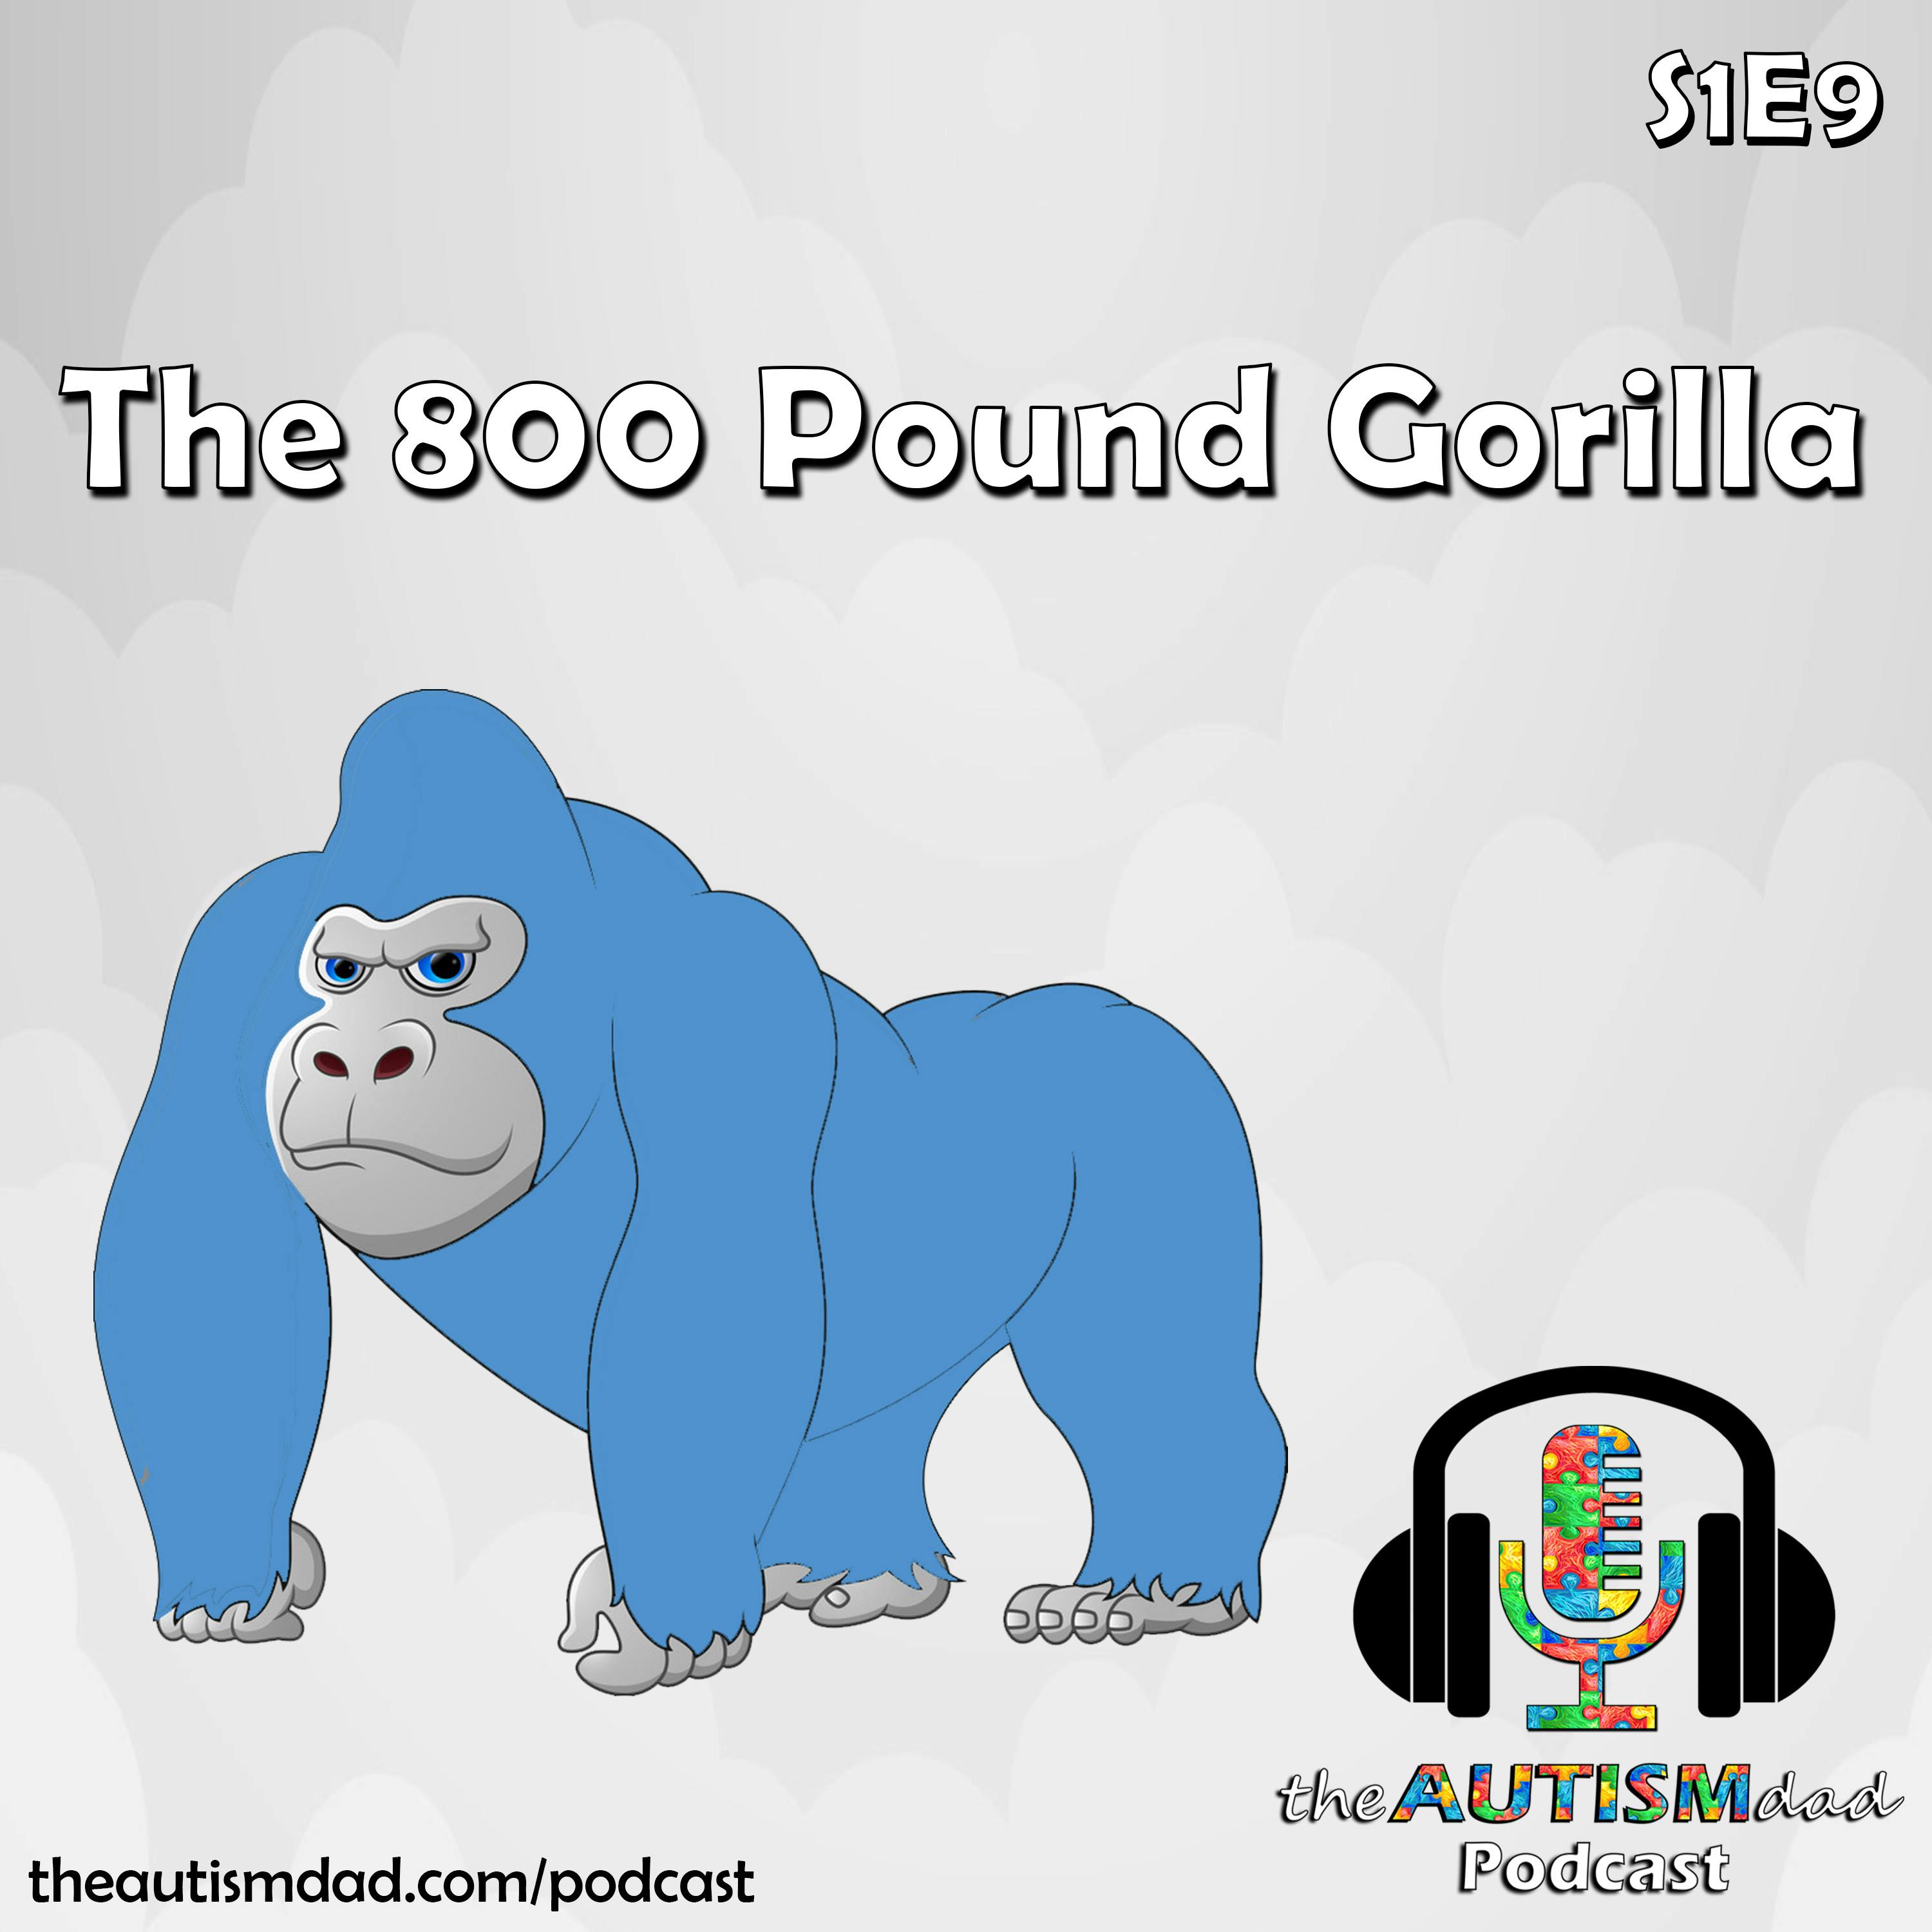 The 800 Pound Gorilla